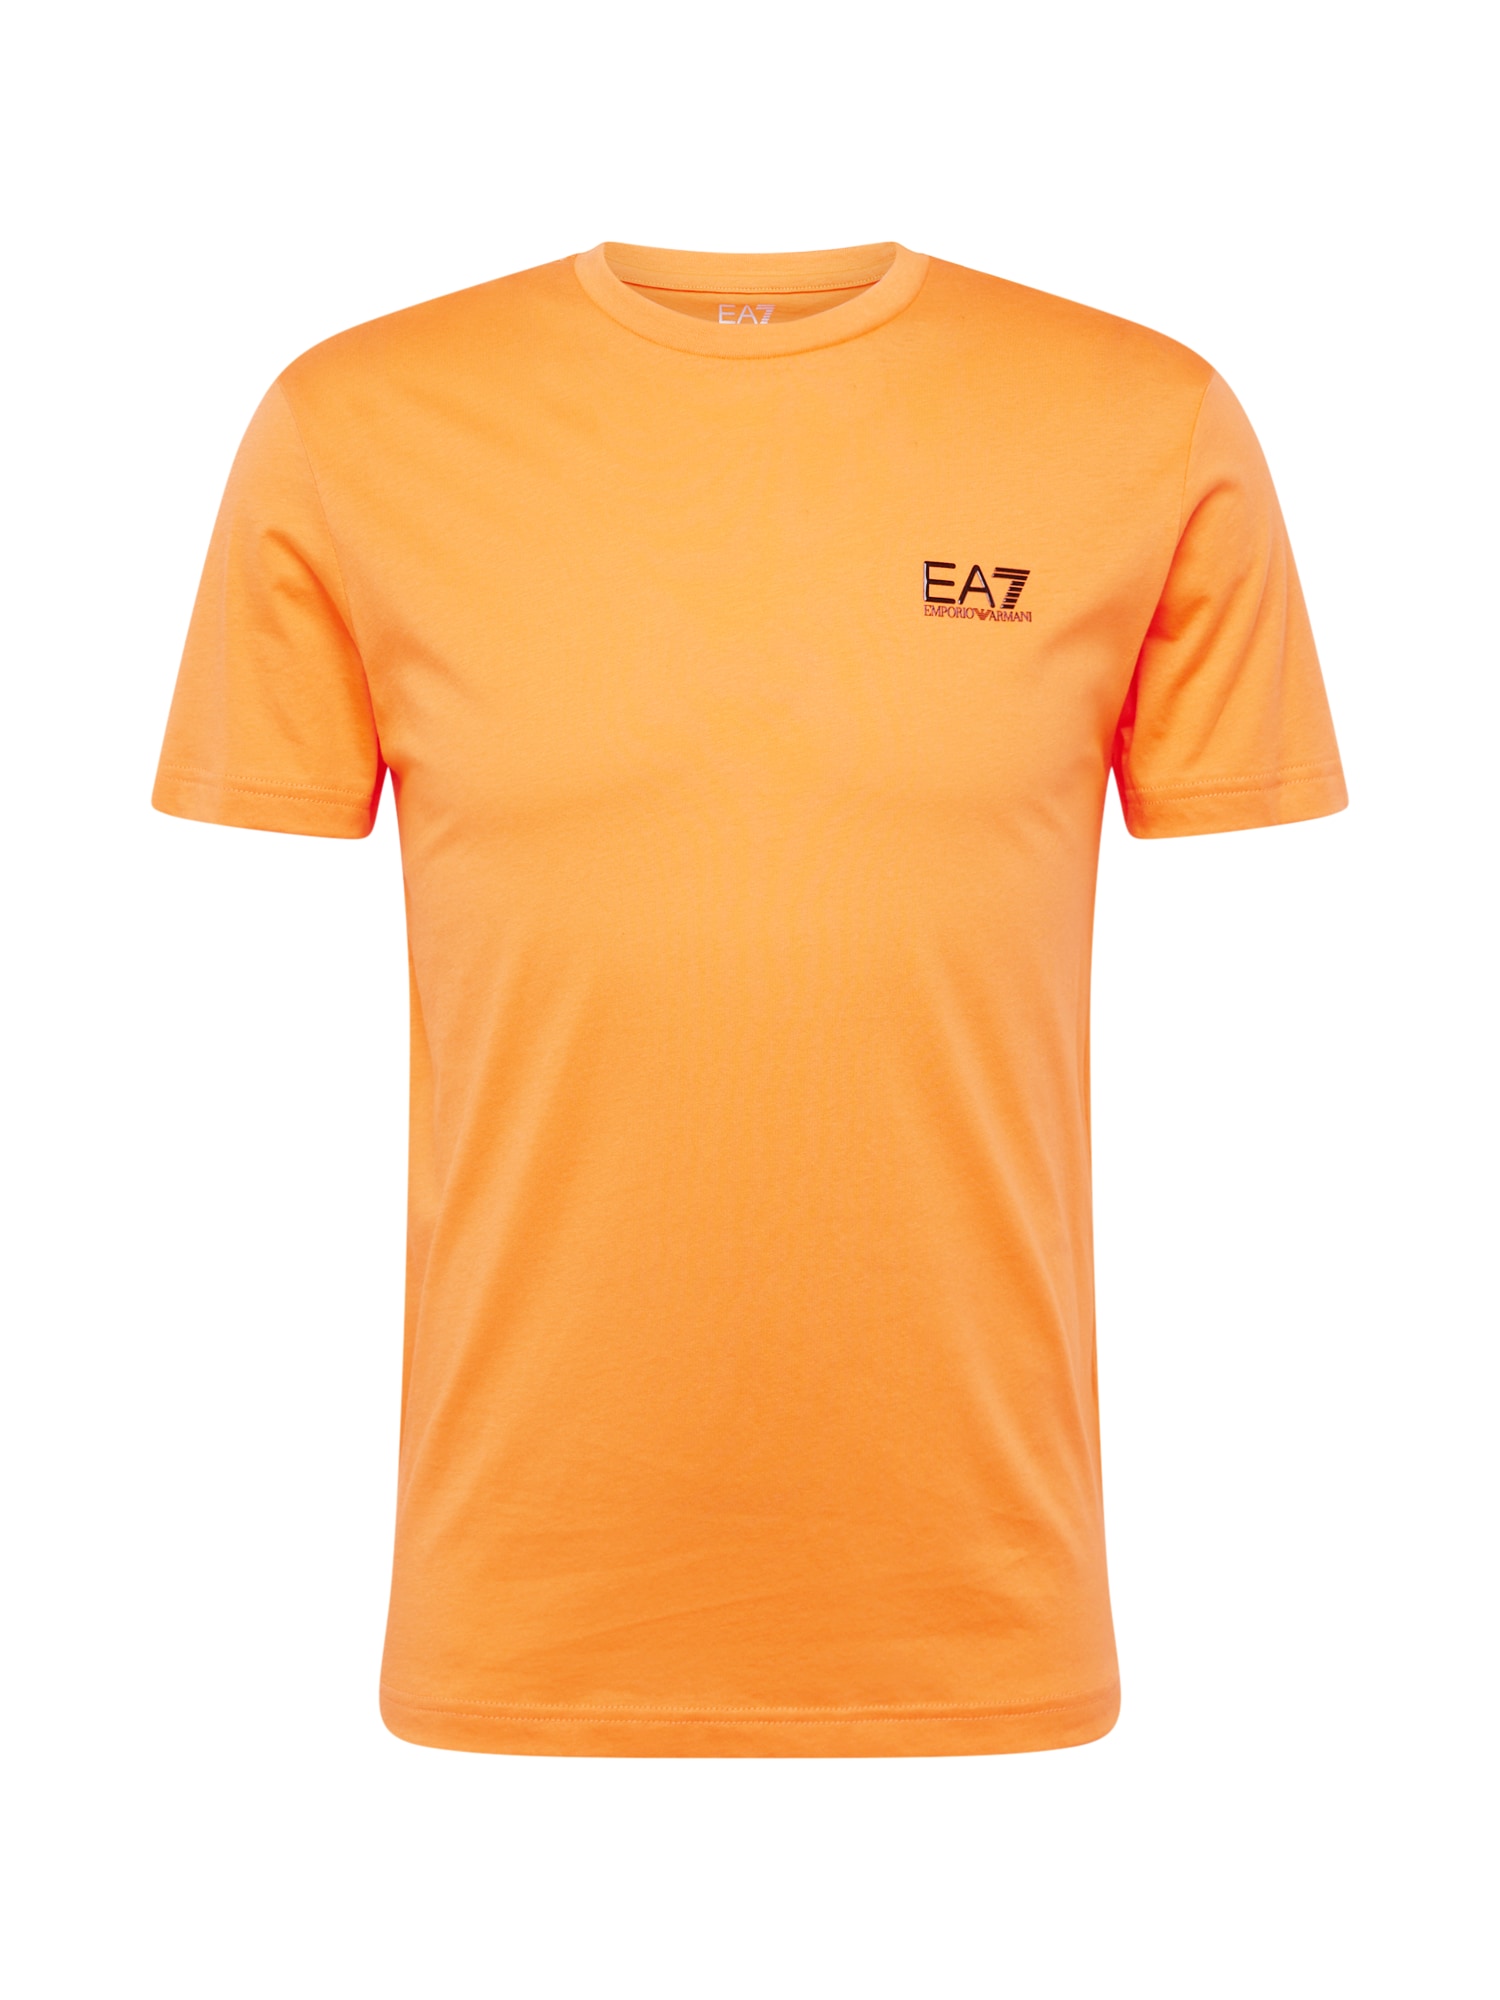 EA7 Emporio Armani Marškinėliai oranžinė / raudona / juoda